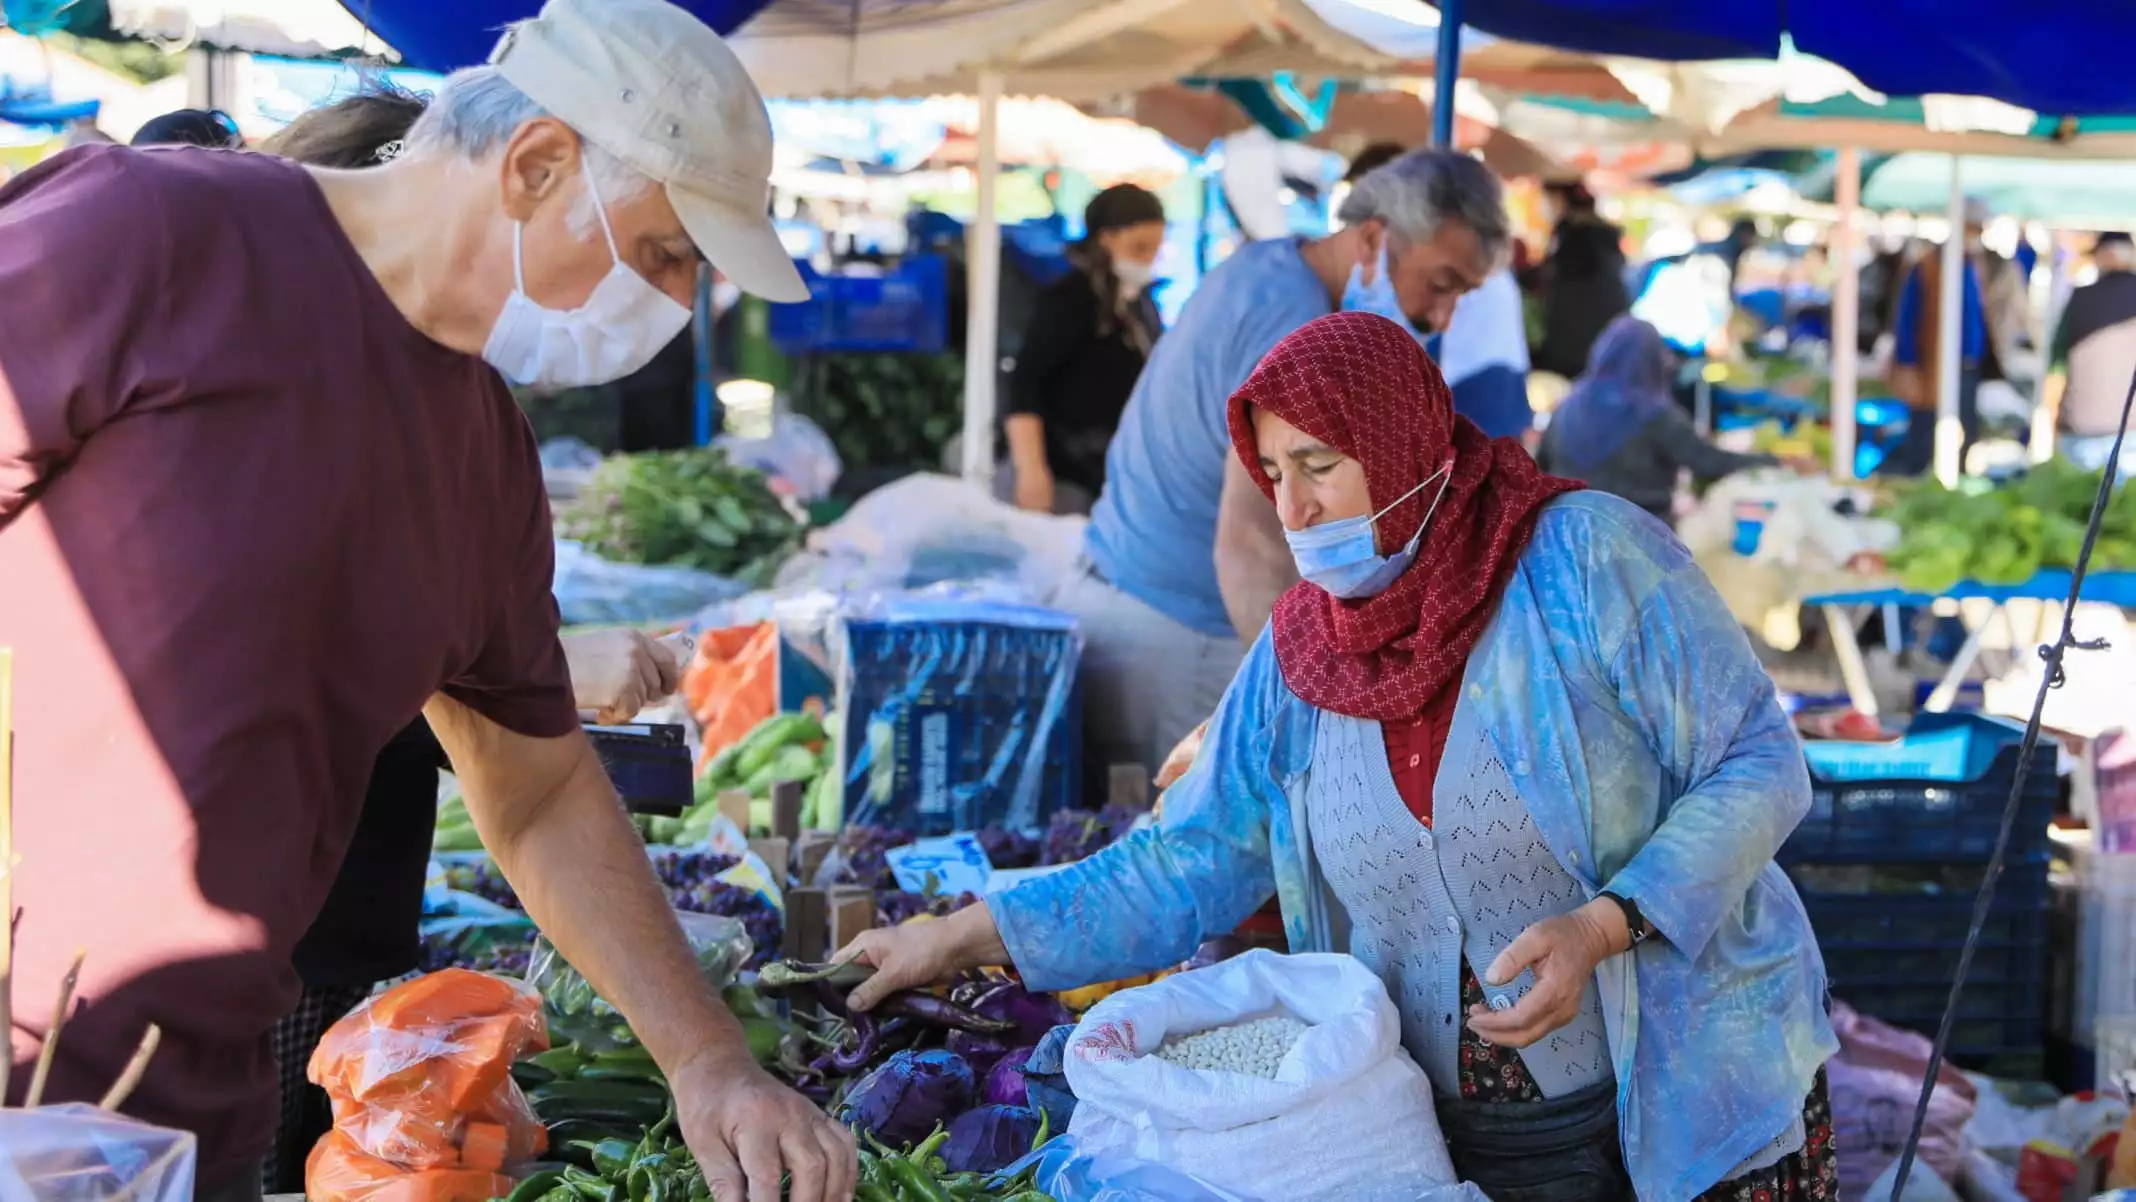 Antalya'da hava sıcaklıklarının mevsim normallerinin üzerinde seyretmesi, sebze ve meyvede üretimi ortalama yüzde 30 düşürdü. Düşen üretim, fiyatlara artış olarak yansıdı. Fiyatların ortalama 2 kat arttığı kaydedildi.